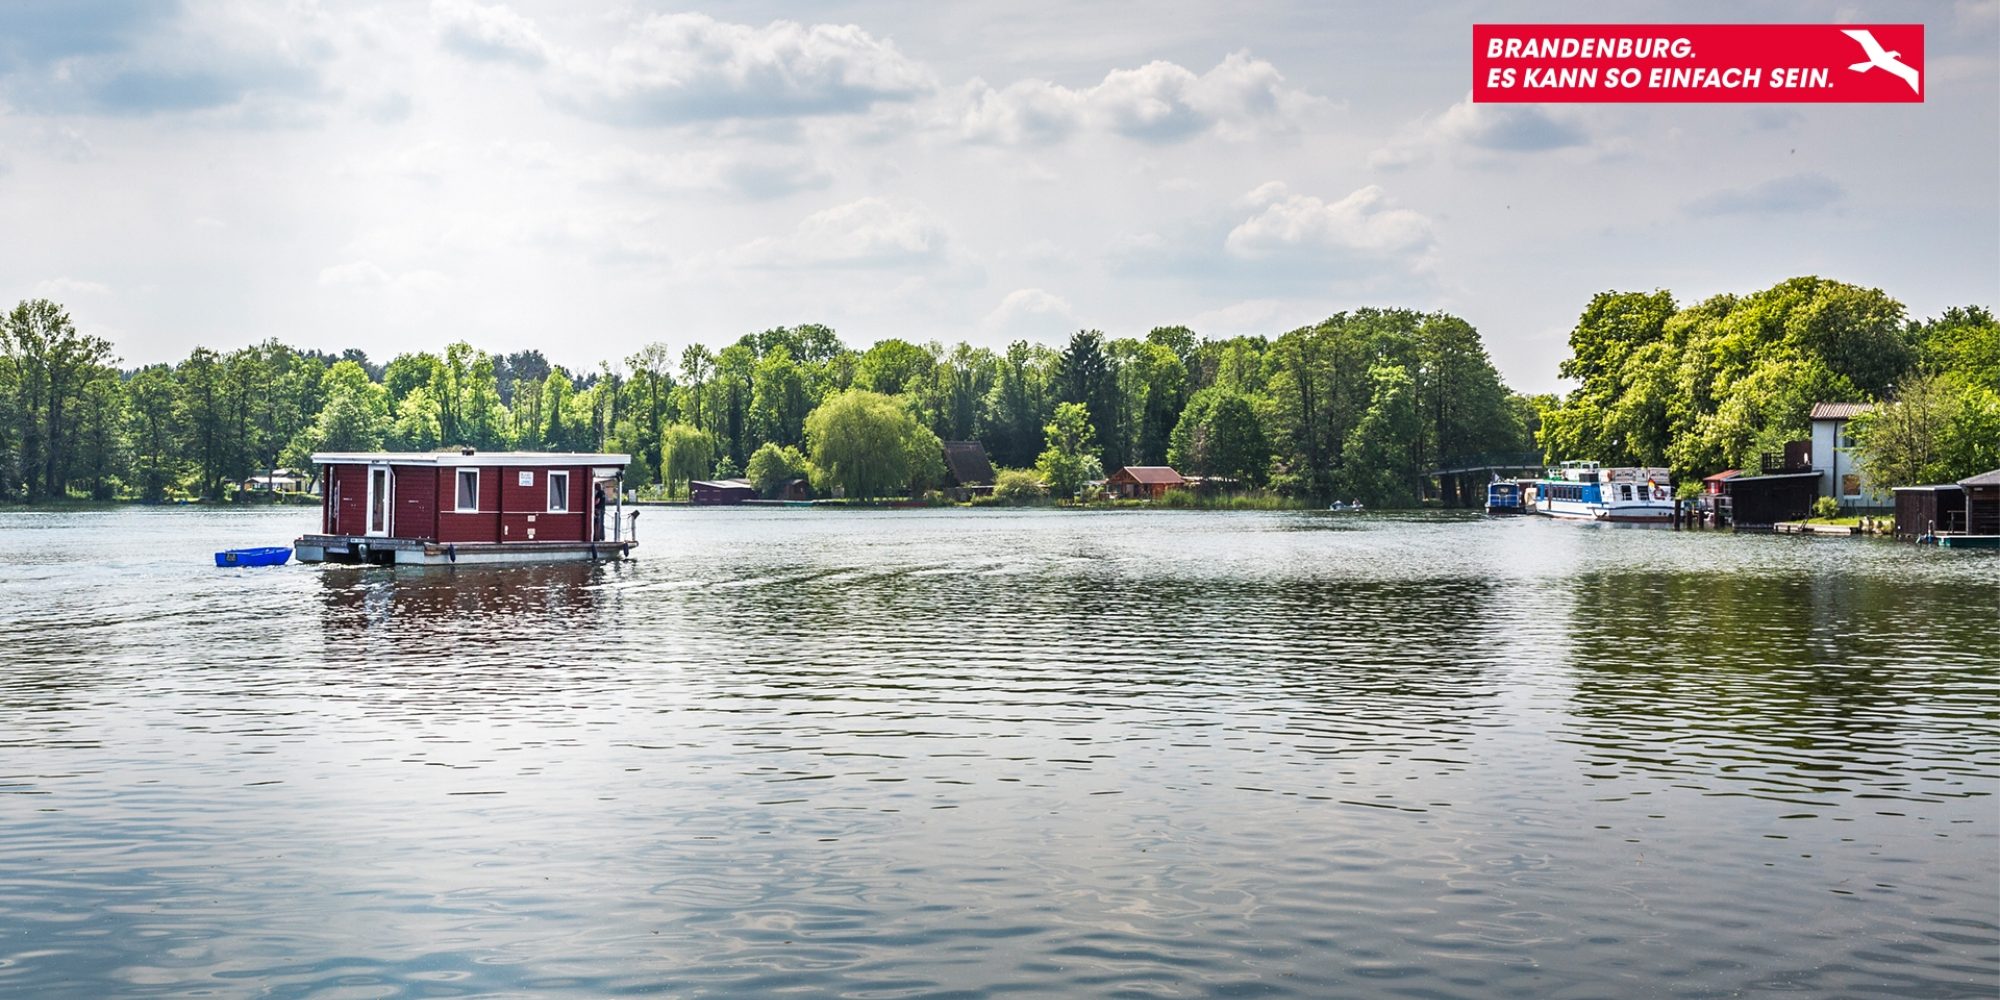 Ein ruhiger See an einem hellen Tag. Auf dem See fährt ein kleines Hausboot. Im Hintergrund Wald.